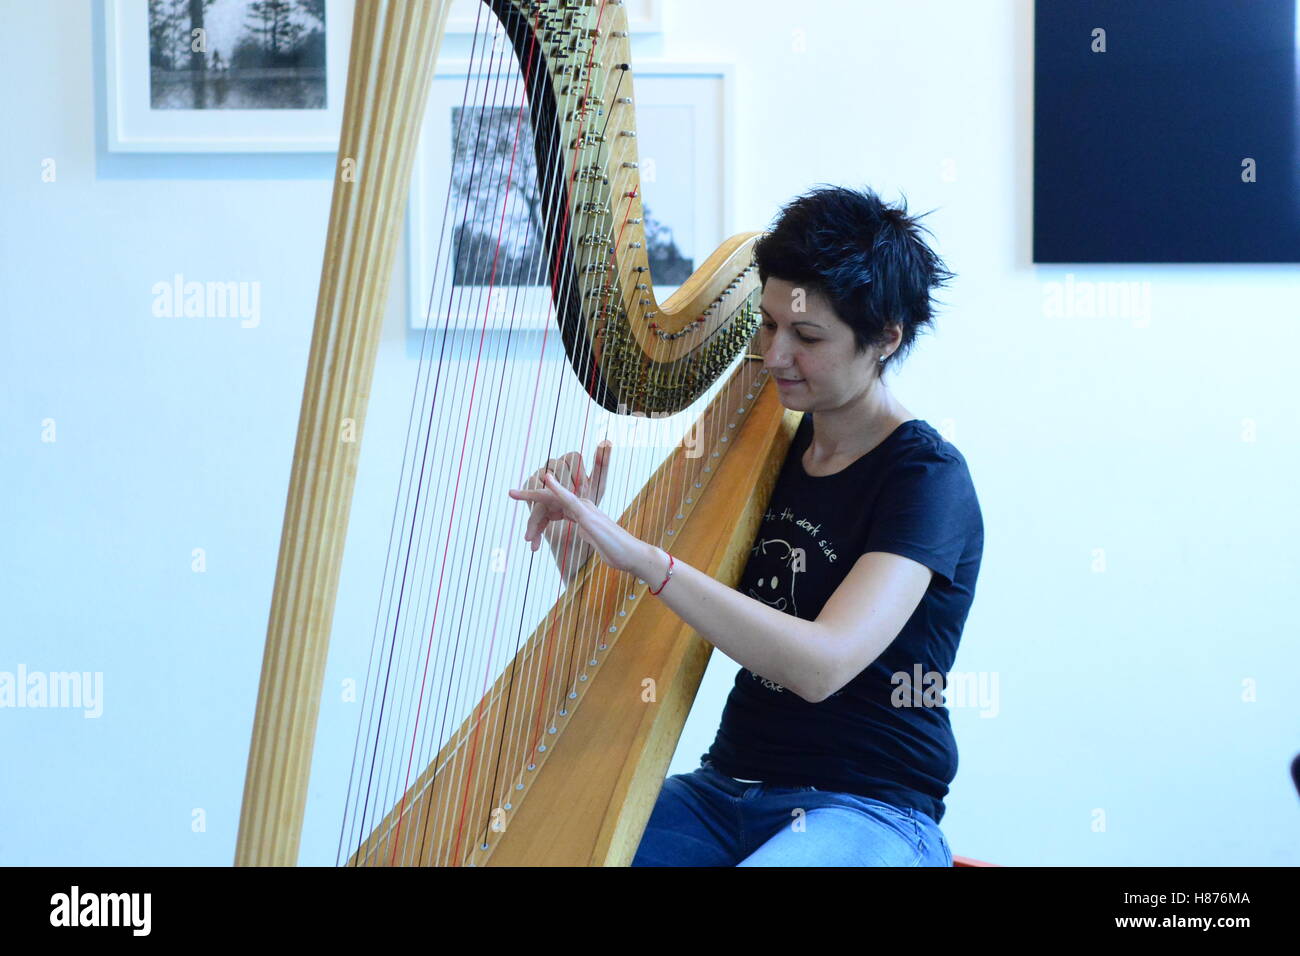 Harp player Stock Photo